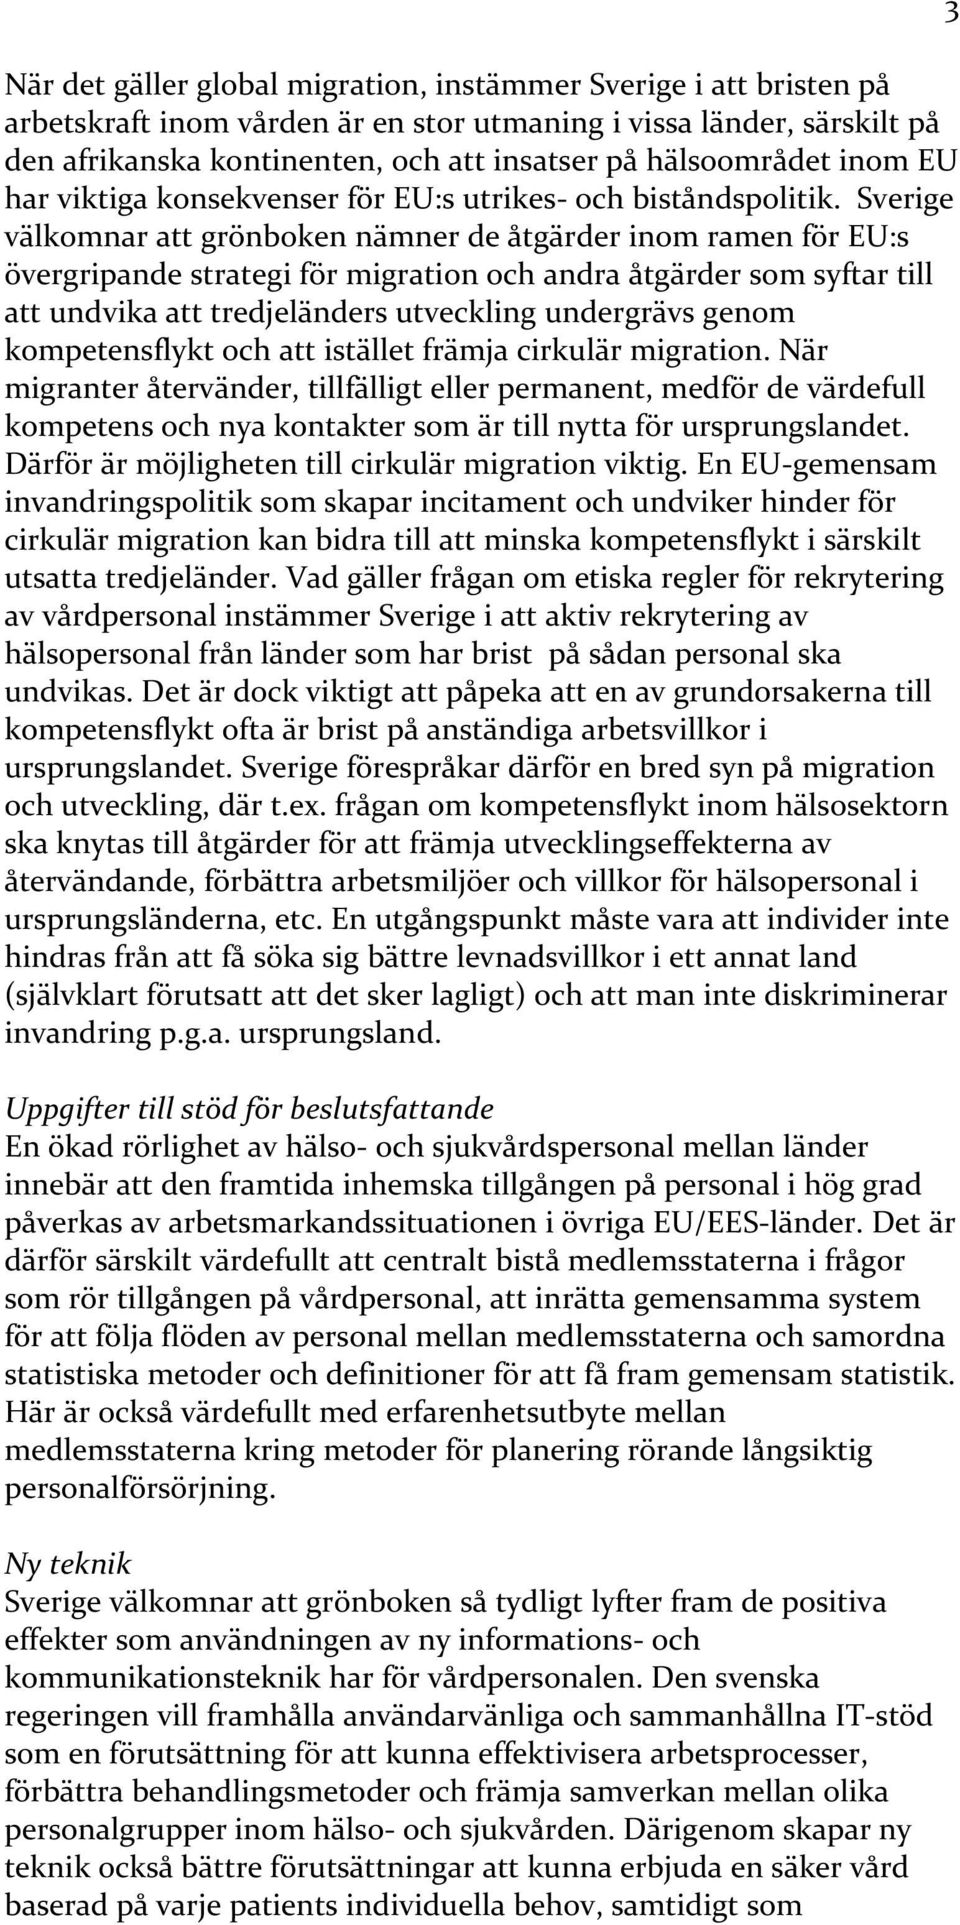 Sverige välkomnar att grönboken nämner de åtgärder inom ramen för EU:s övergripande strategi för migration och andra åtgärder som syftar till att undvika att tredjeländers utveckling undergrävs genom